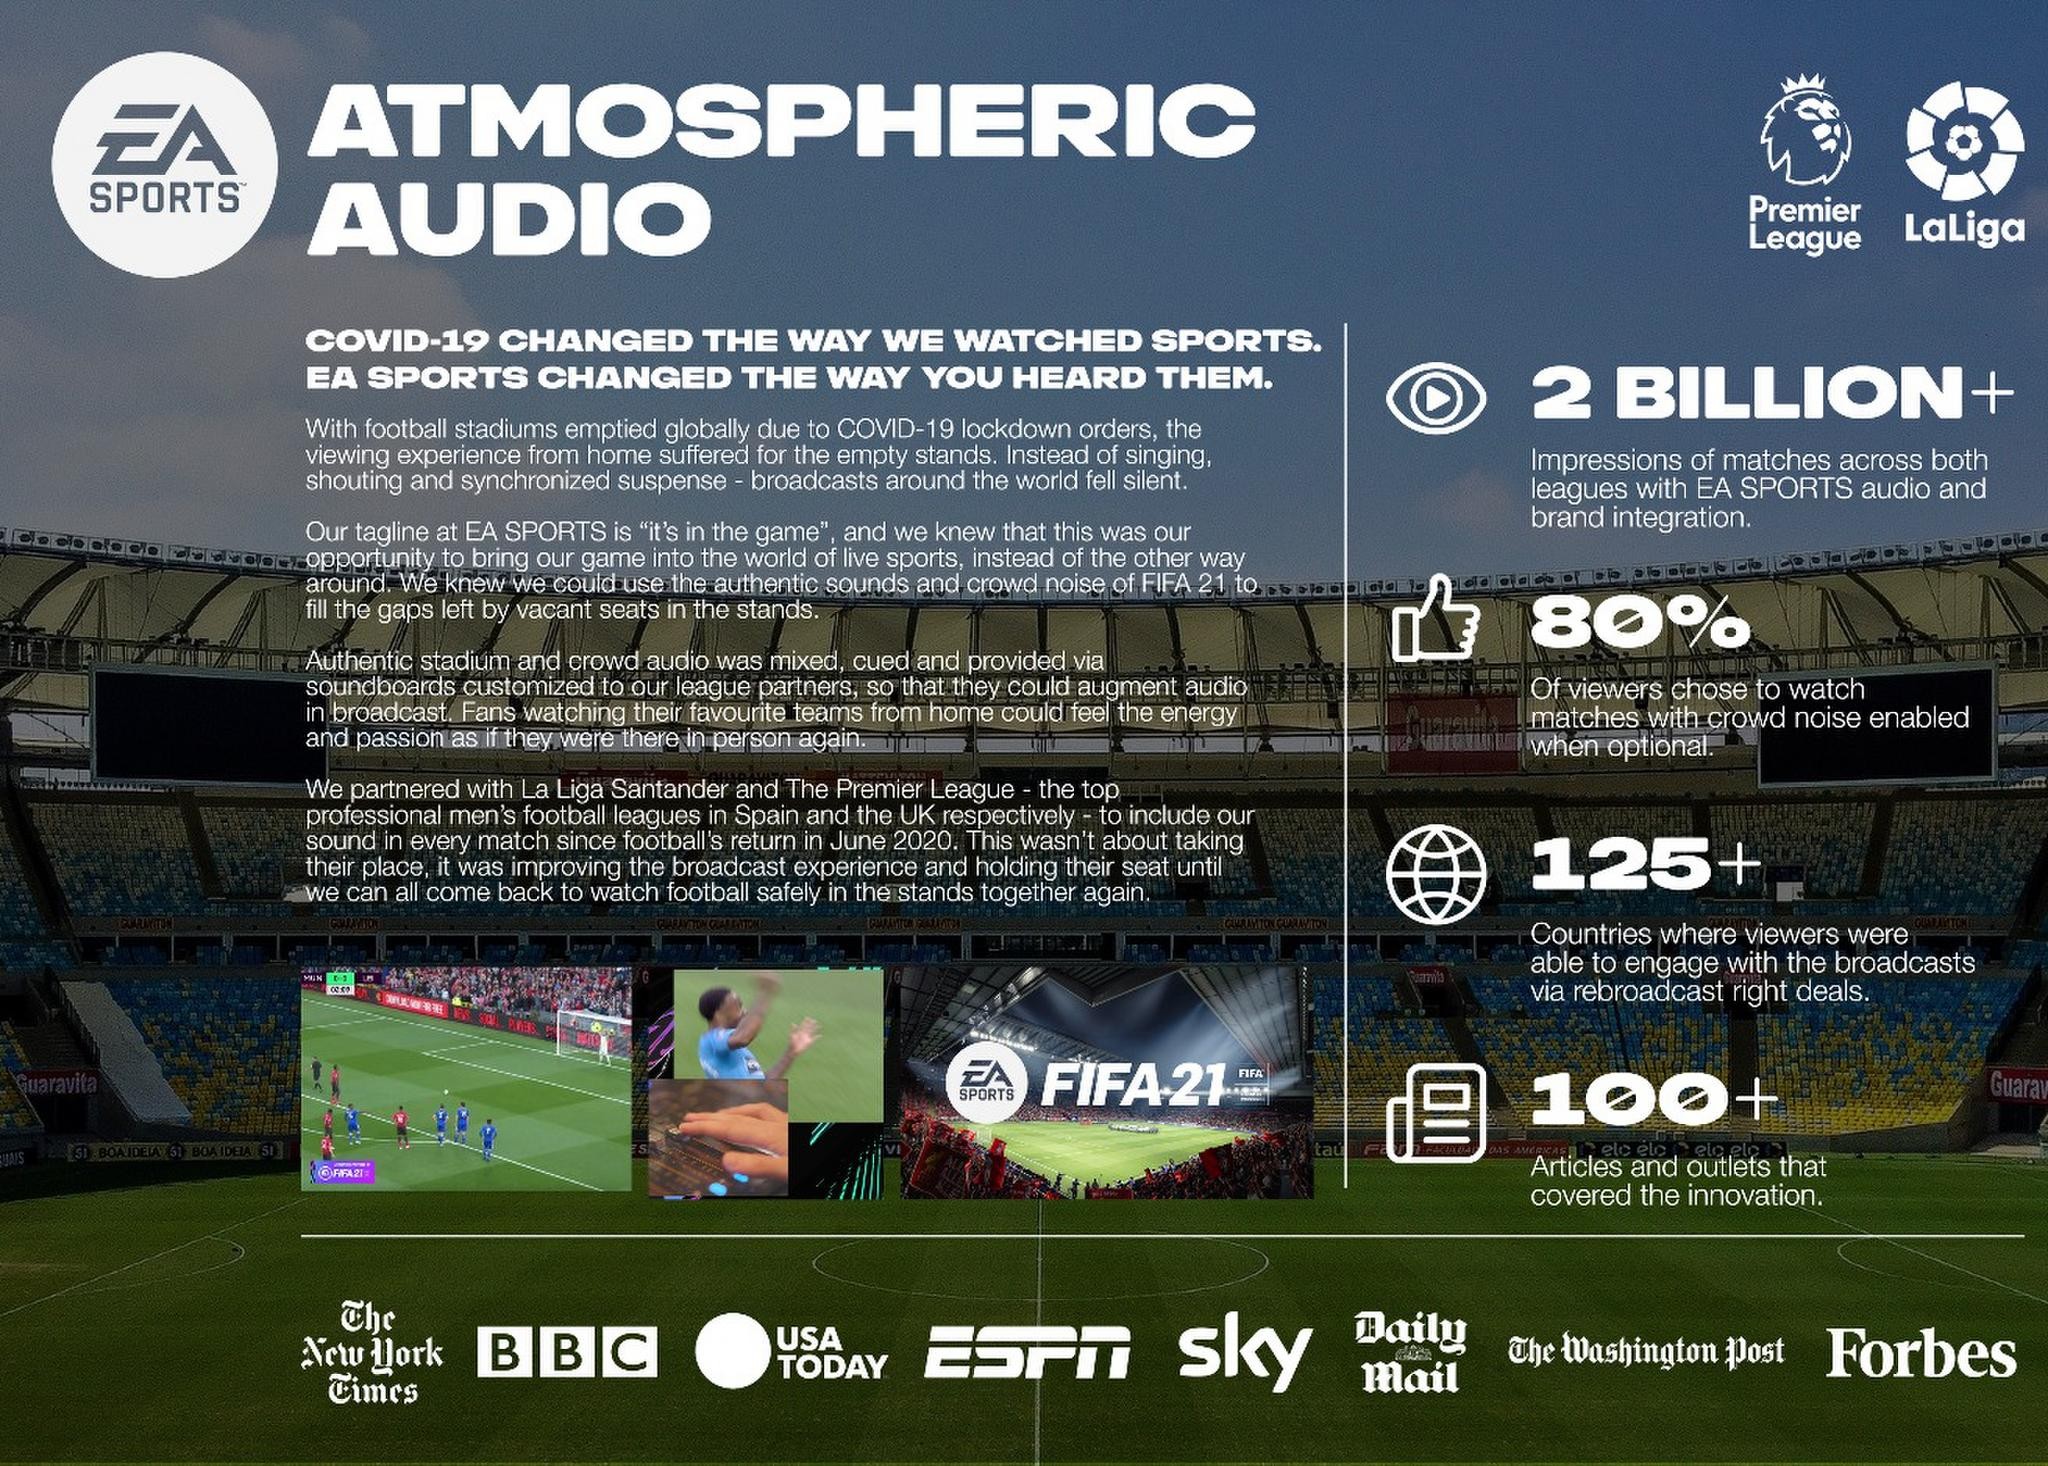 FIFA Atmospheric Audio